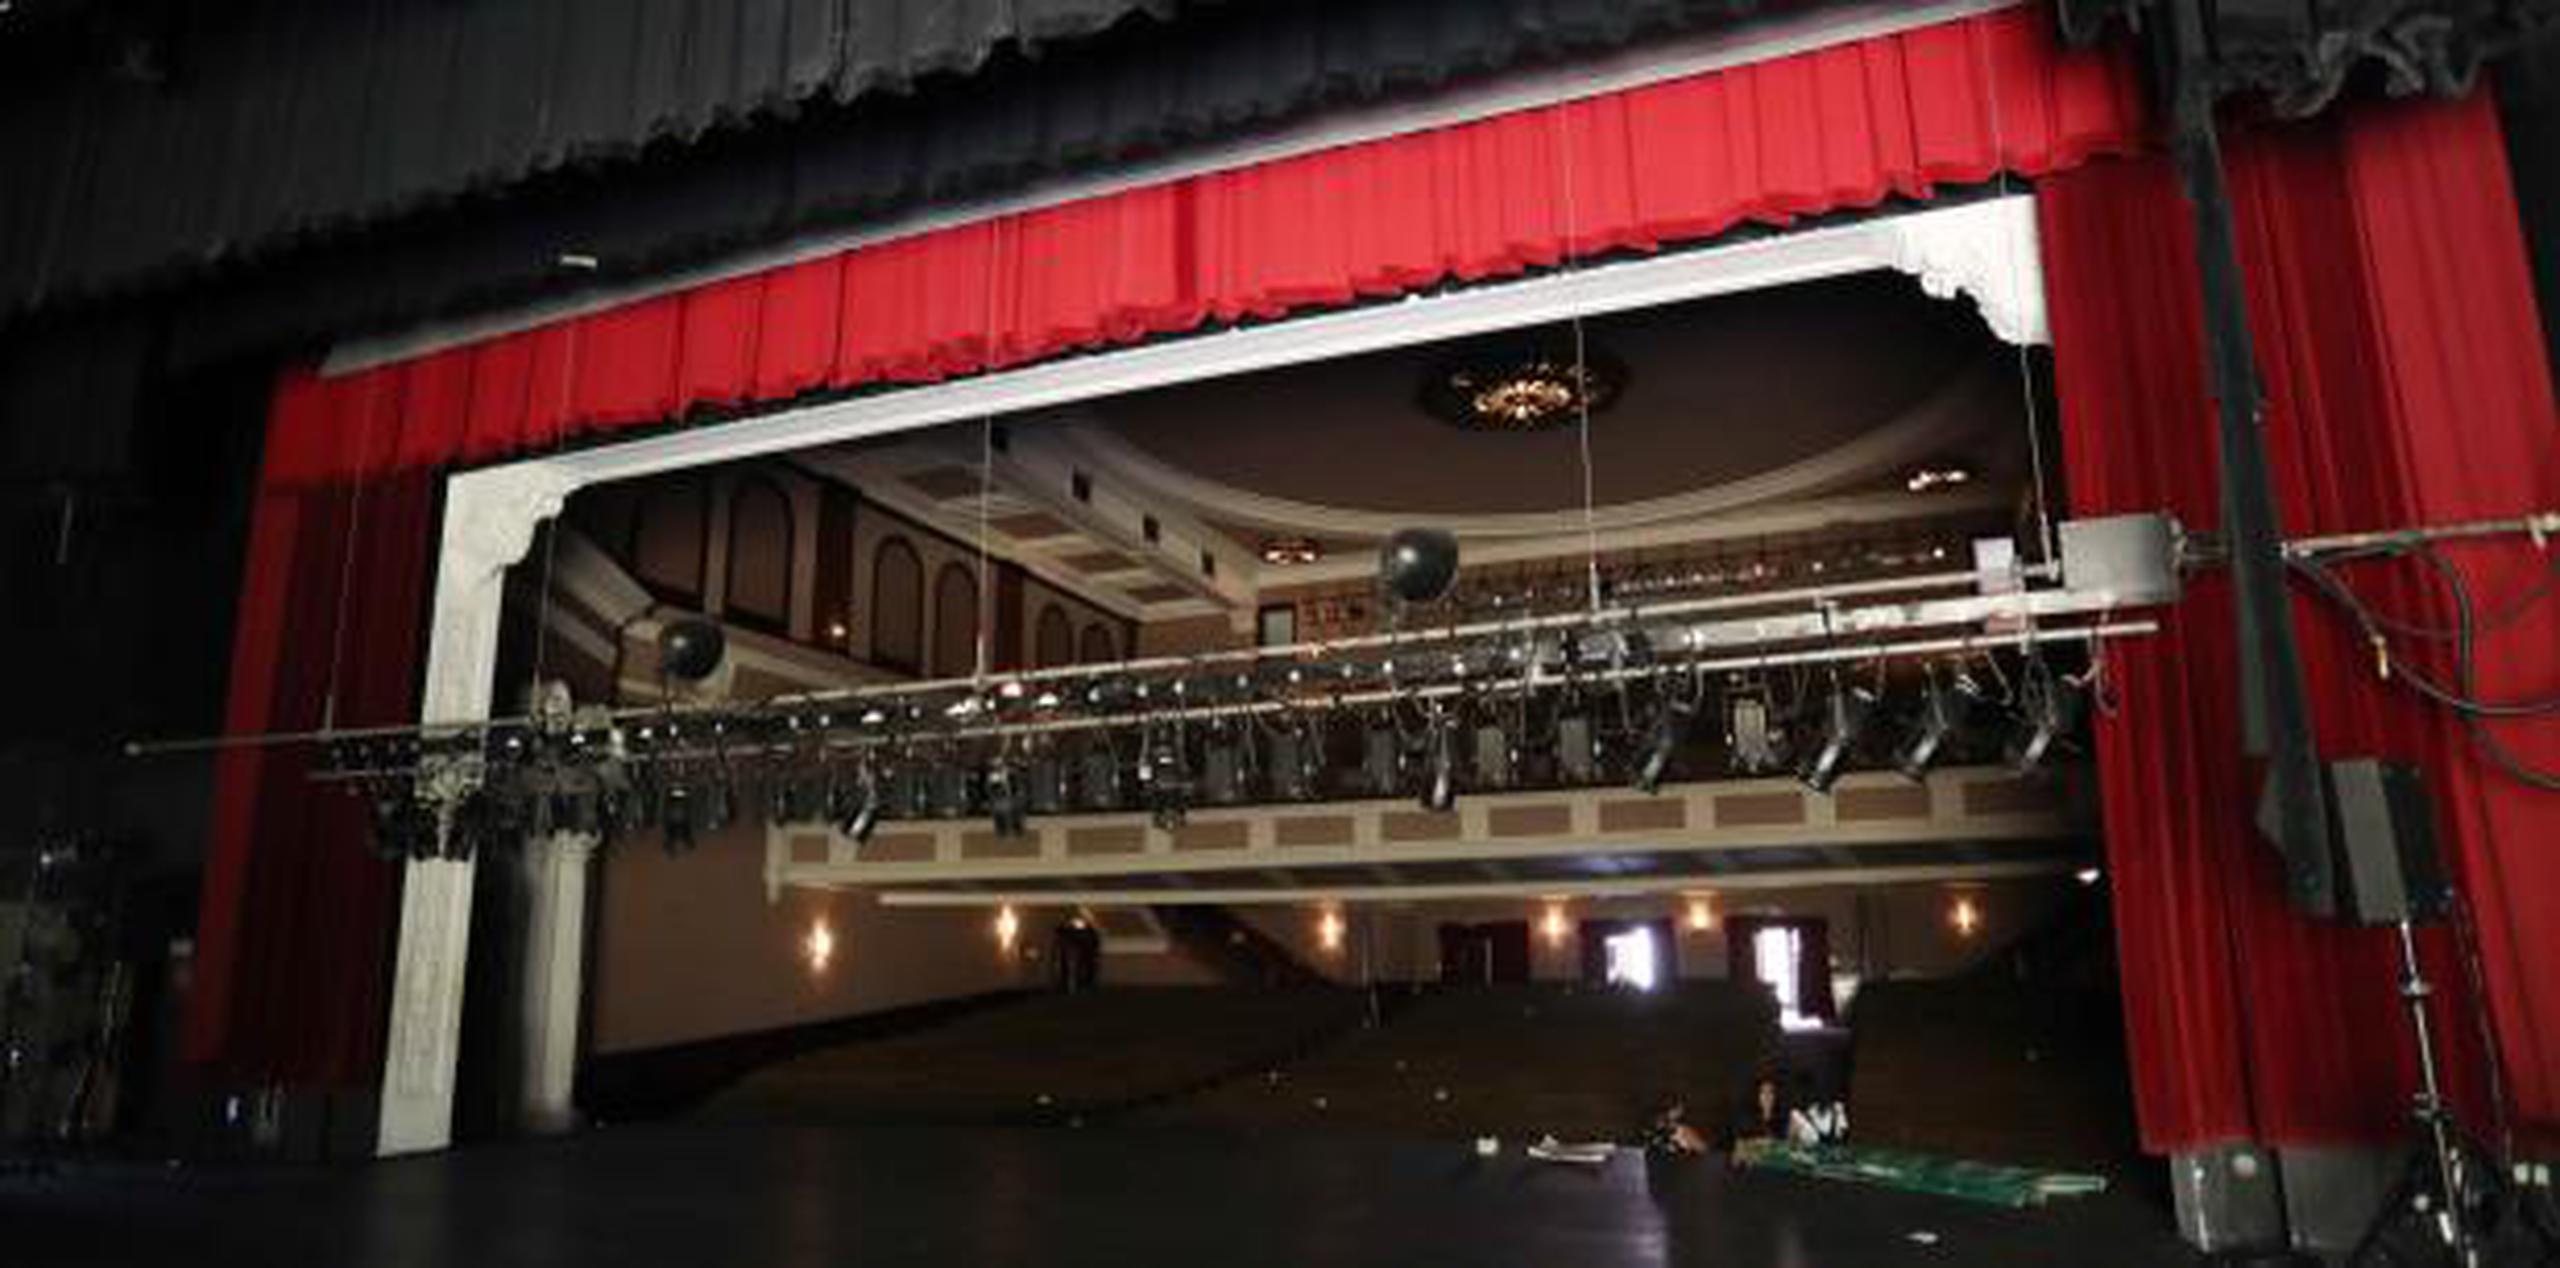 El teatro La Perla operó hasta el domingo antes del paso del huracán María. Desde entonces cerró operaciones. (vanessa.serra@gfrmedia.com)